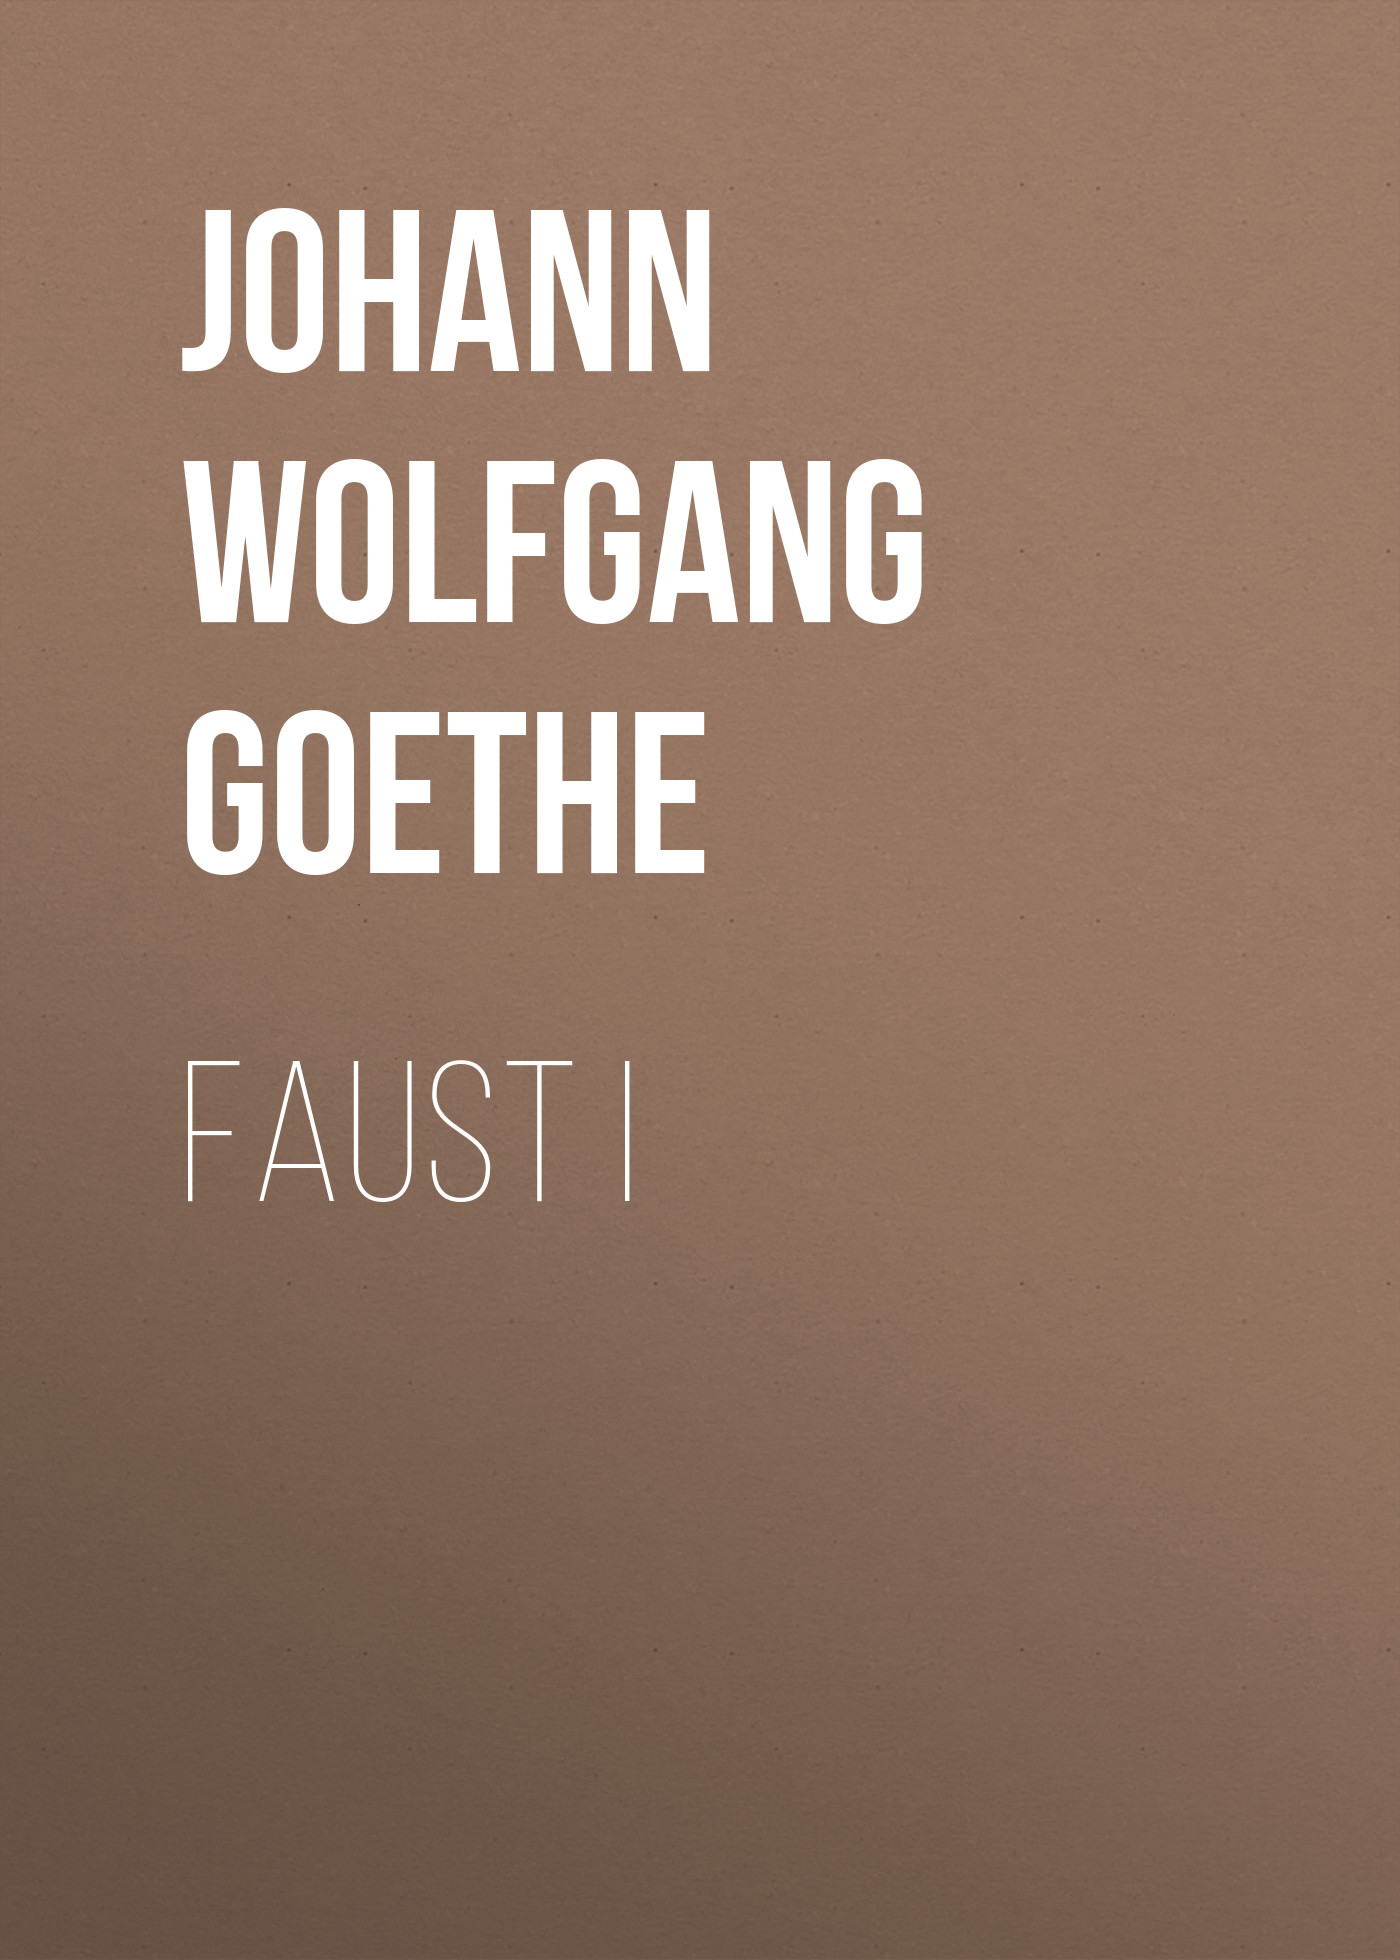 Книга Faust I из серии , созданная Иоганн Вольфганг Гёте, может относится к жанру Зарубежная классика, Зарубежная старинная литература. Стоимость электронной книги Faust I с идентификатором 25202767 составляет 0 руб.